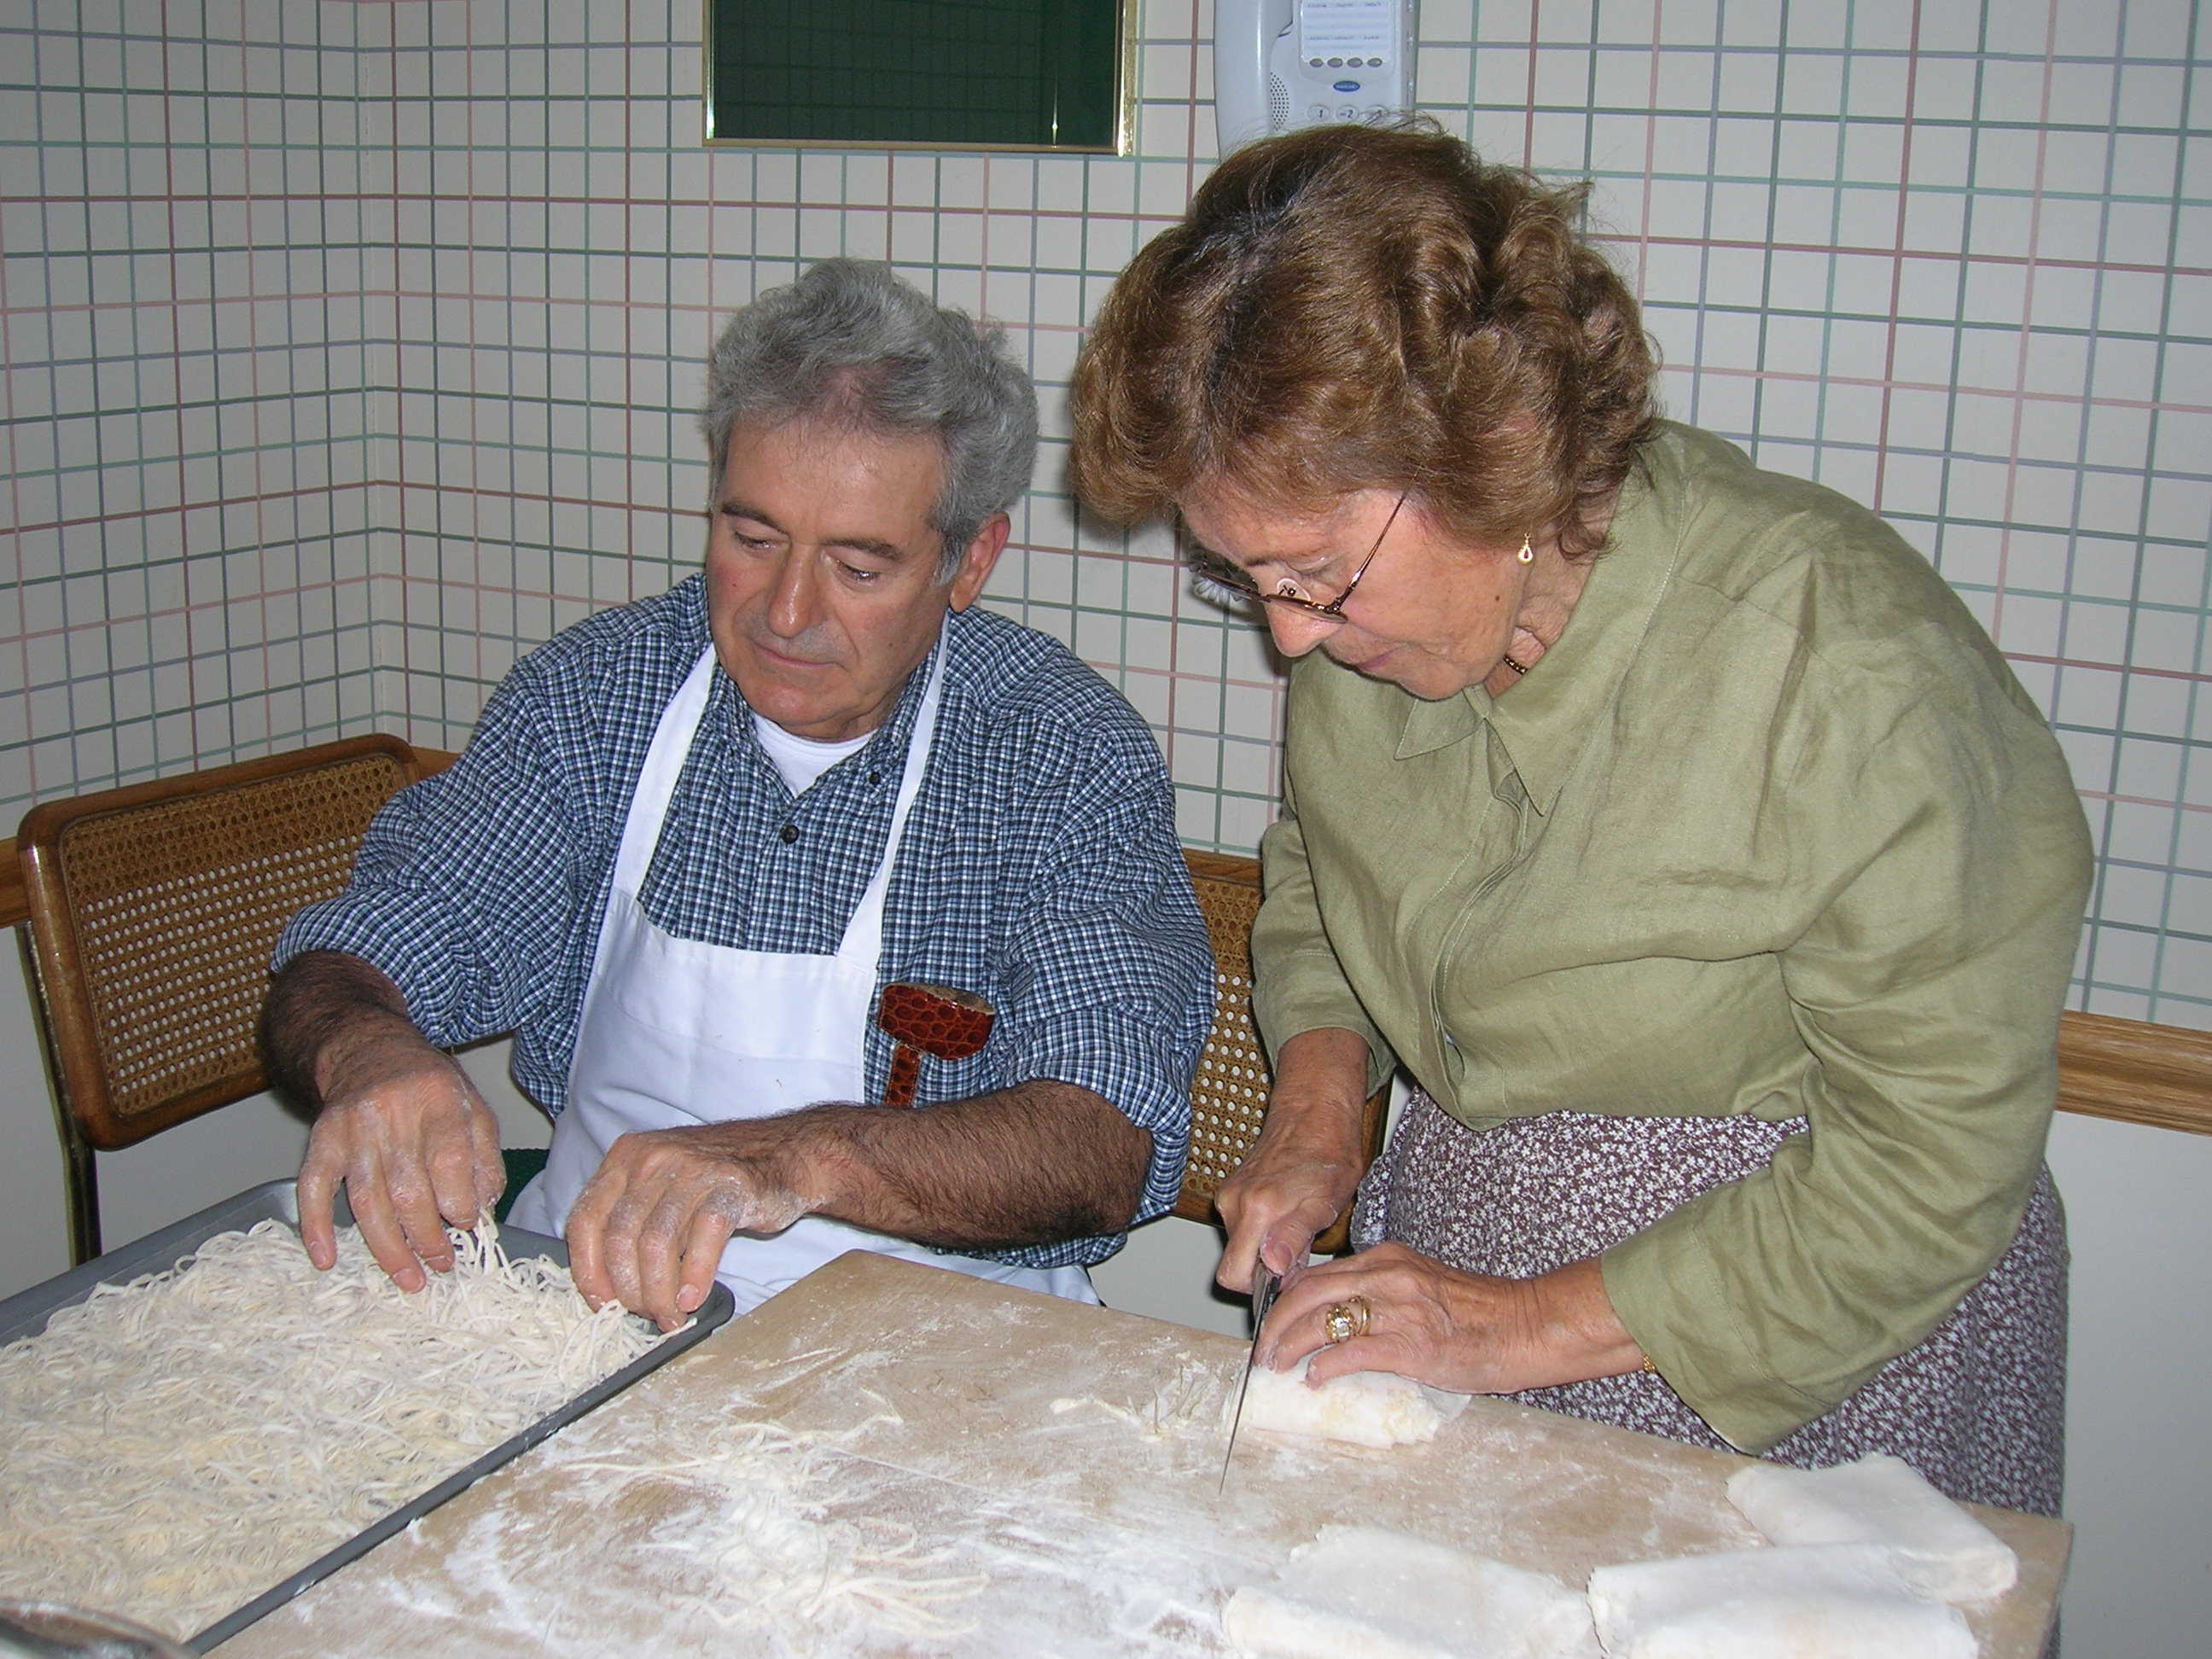 Nonno and Nonna Pasta